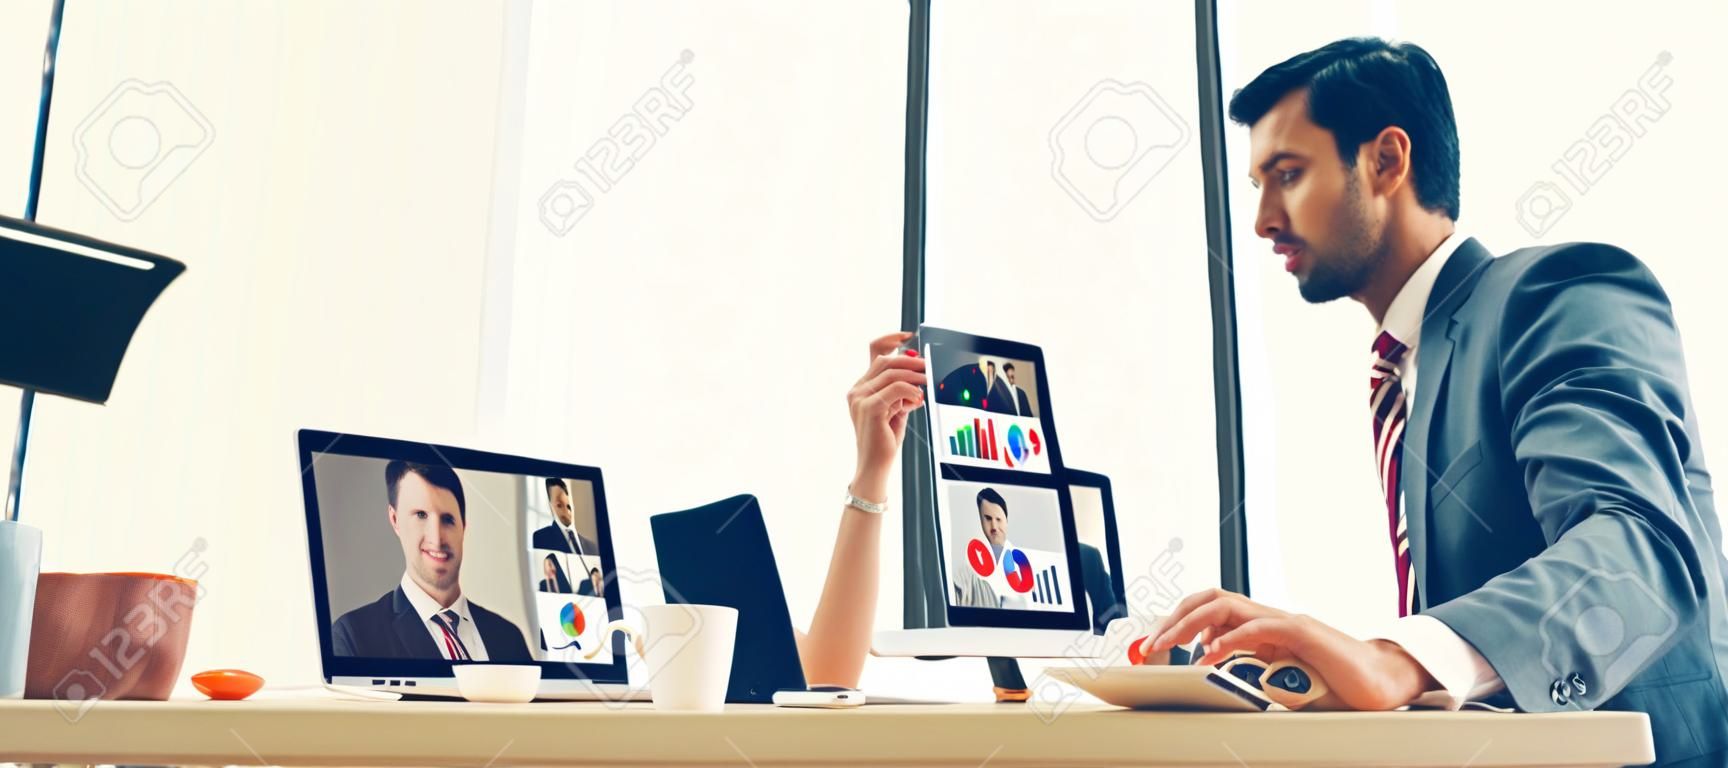 Groupe d'appels vidéo hommes d'affaires se réunissant sur un lieu de travail virtuel ou un bureau distant. Conférence téléphonique de télétravail utilisant la technologie vidéo intelligente pour communiquer avec un collègue dans une entreprise professionnelle.